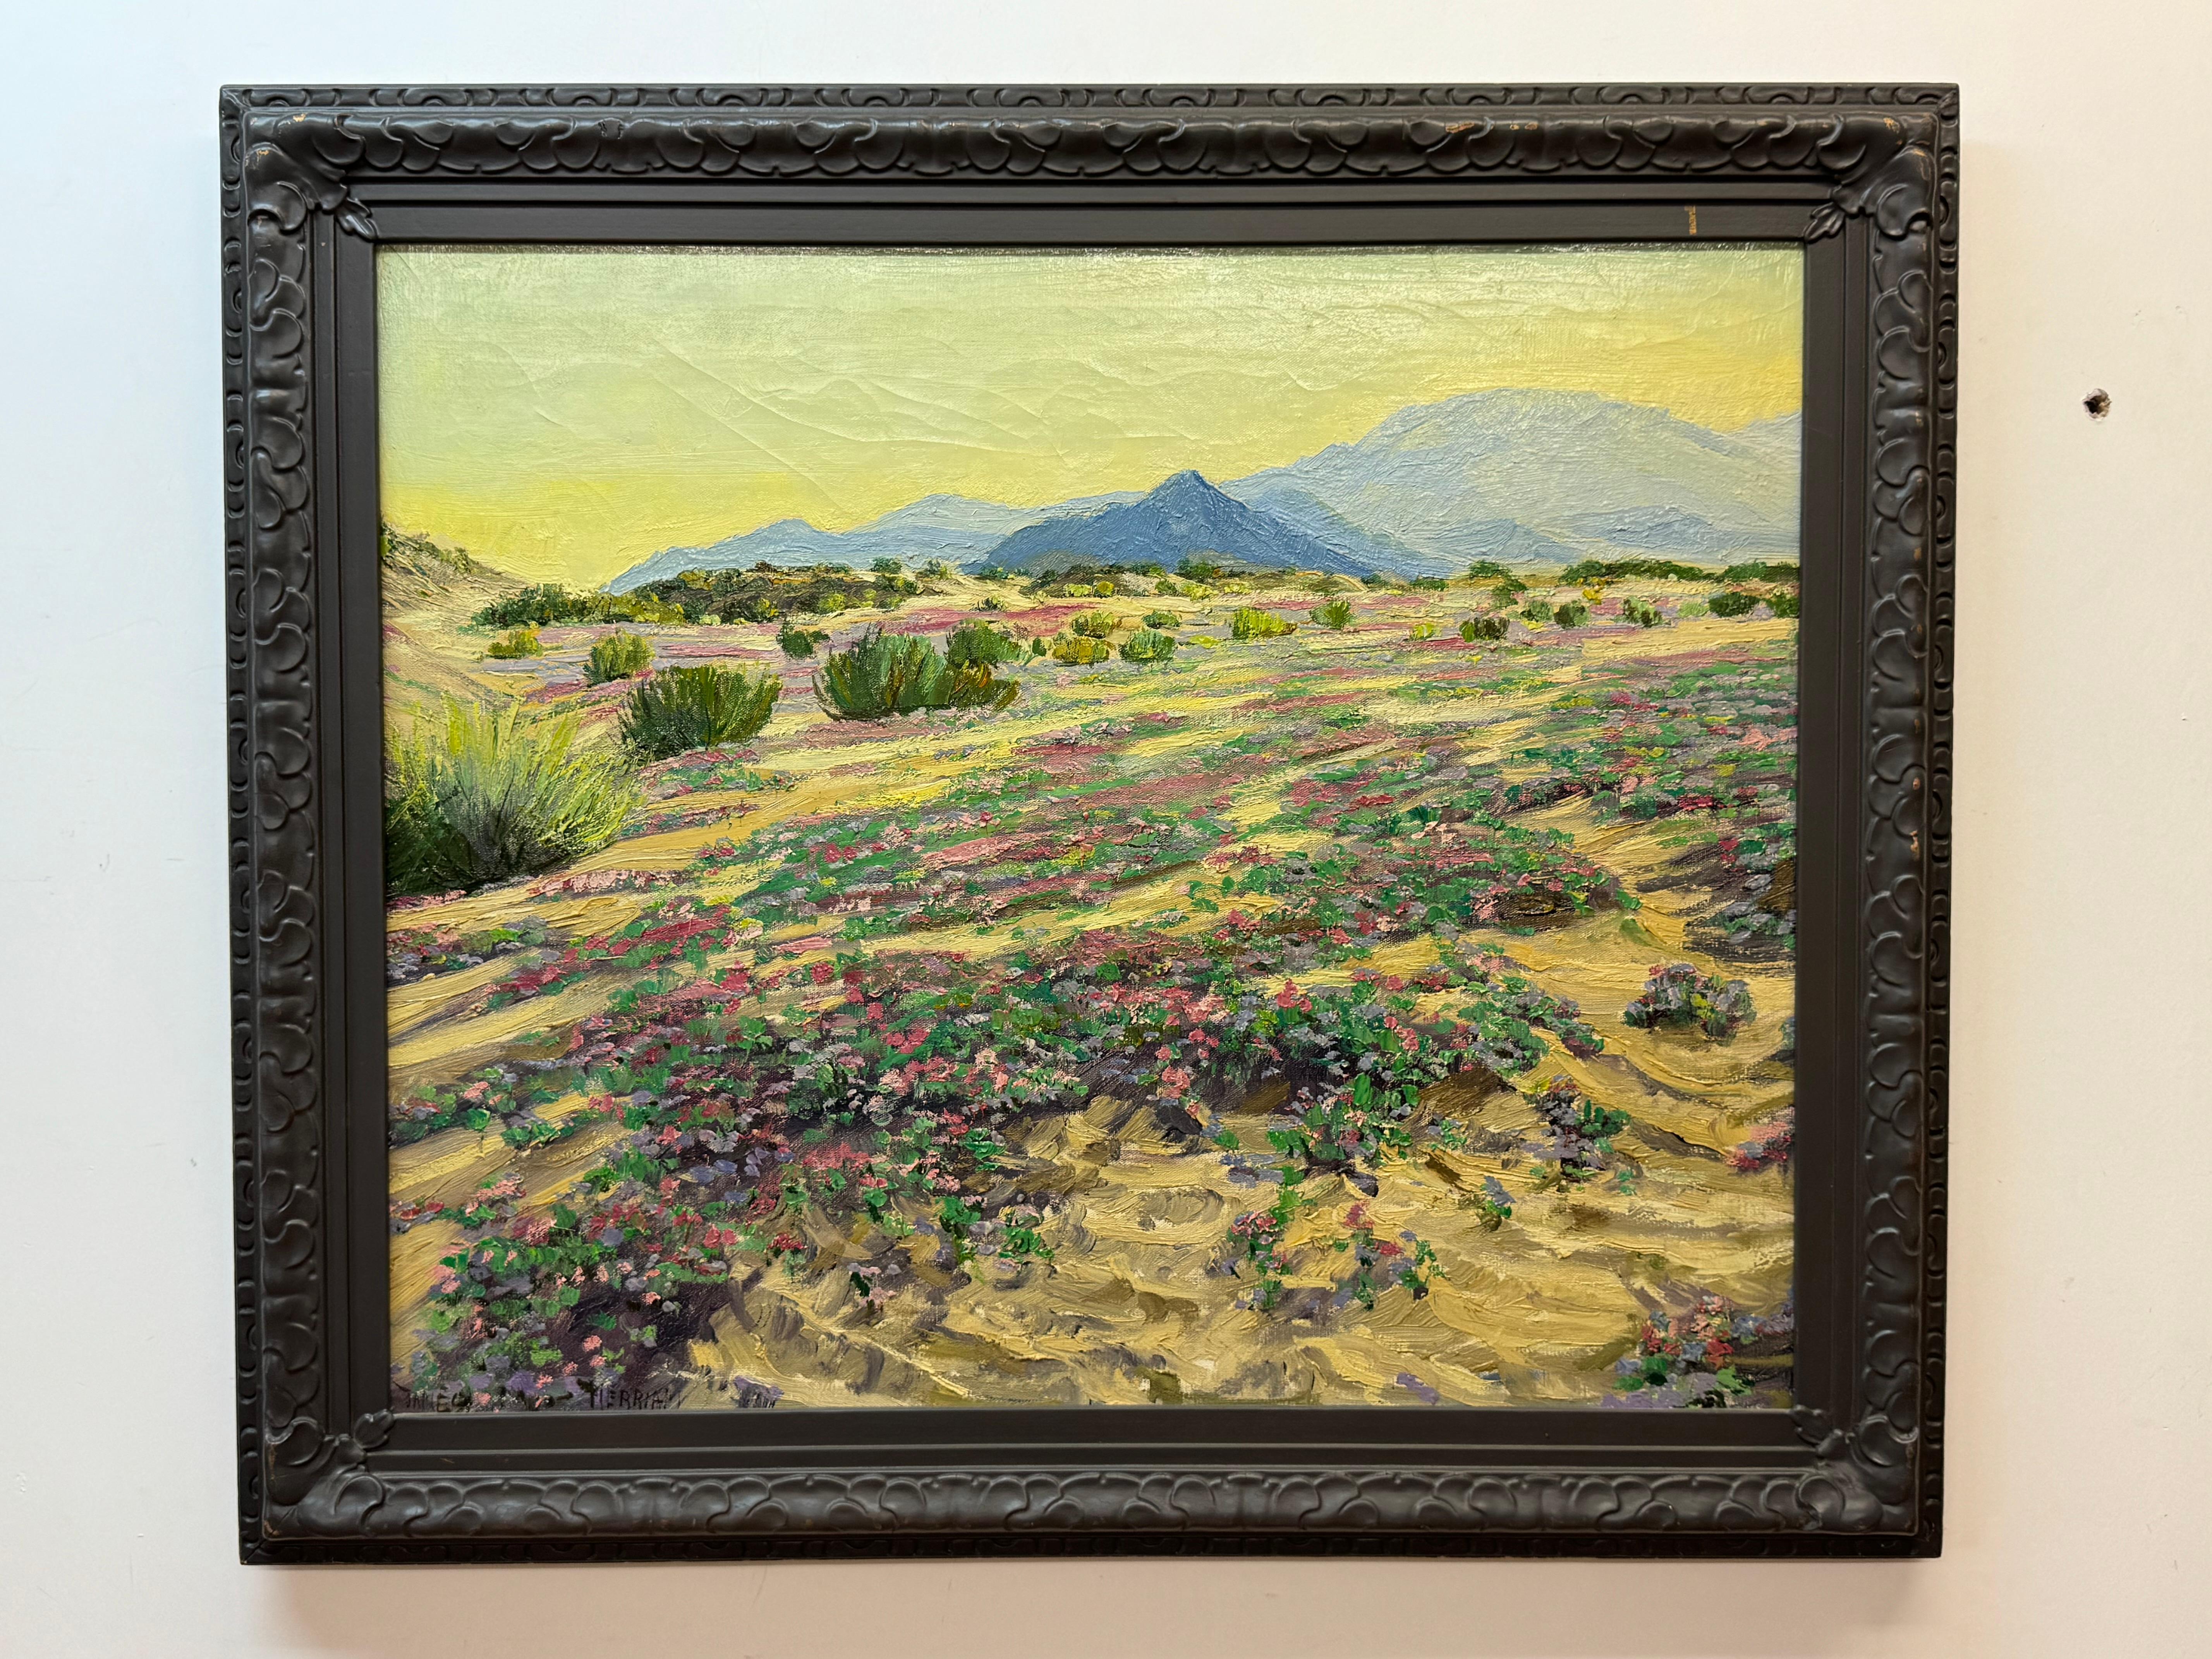 Peinture de paysage désertique fleuri. Huile sur toile. 25" x 30" sans cadre, 30.5" x 35.5" avec cadre